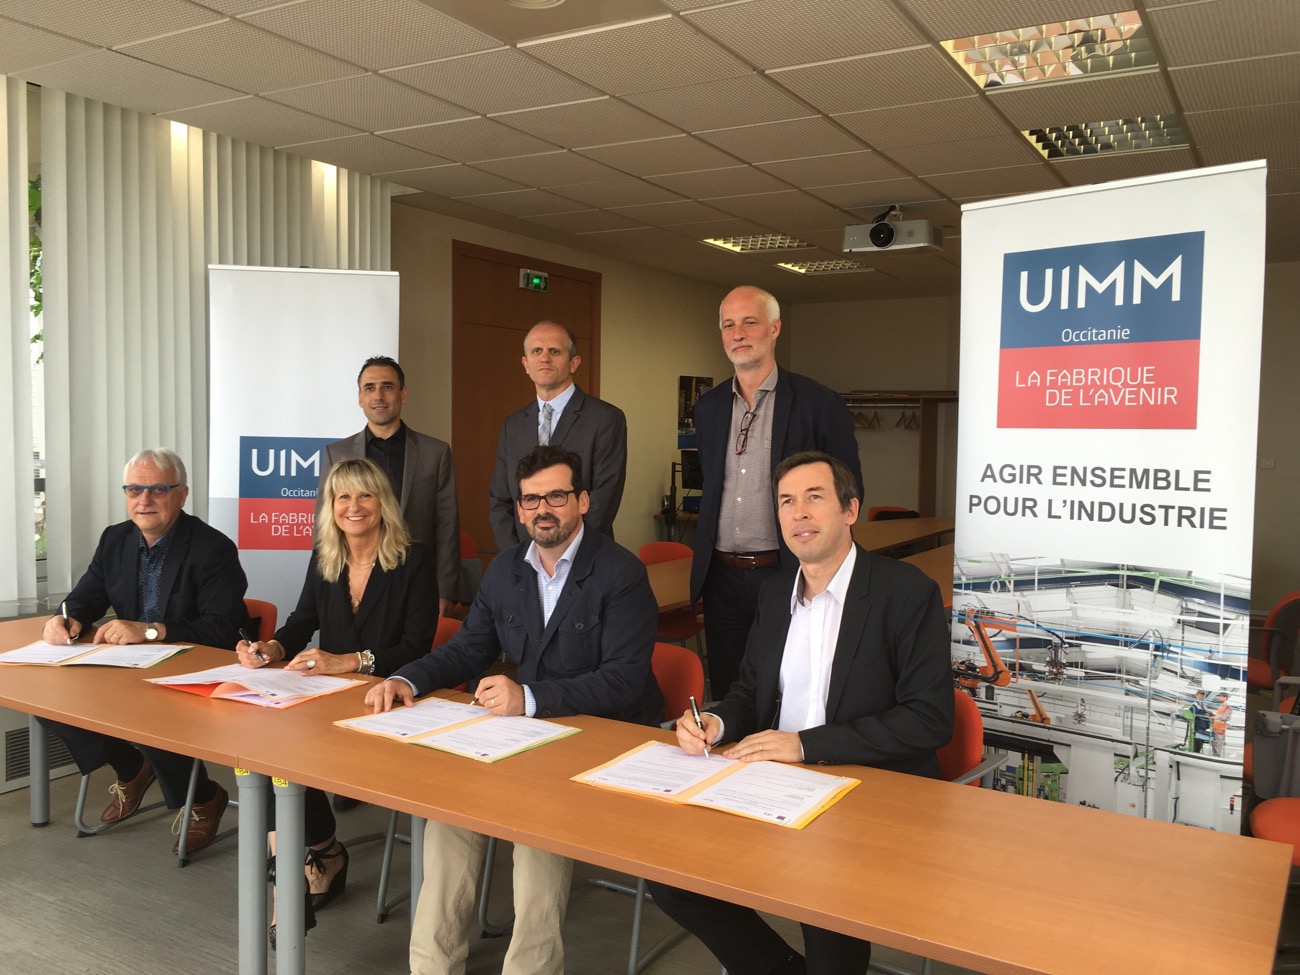 Occitanie - OCCITANIE -  Le Pôle Formation de l’UIMM Occitanie et l’ITII Midi-Pyrénées poursuivent leur partenariat